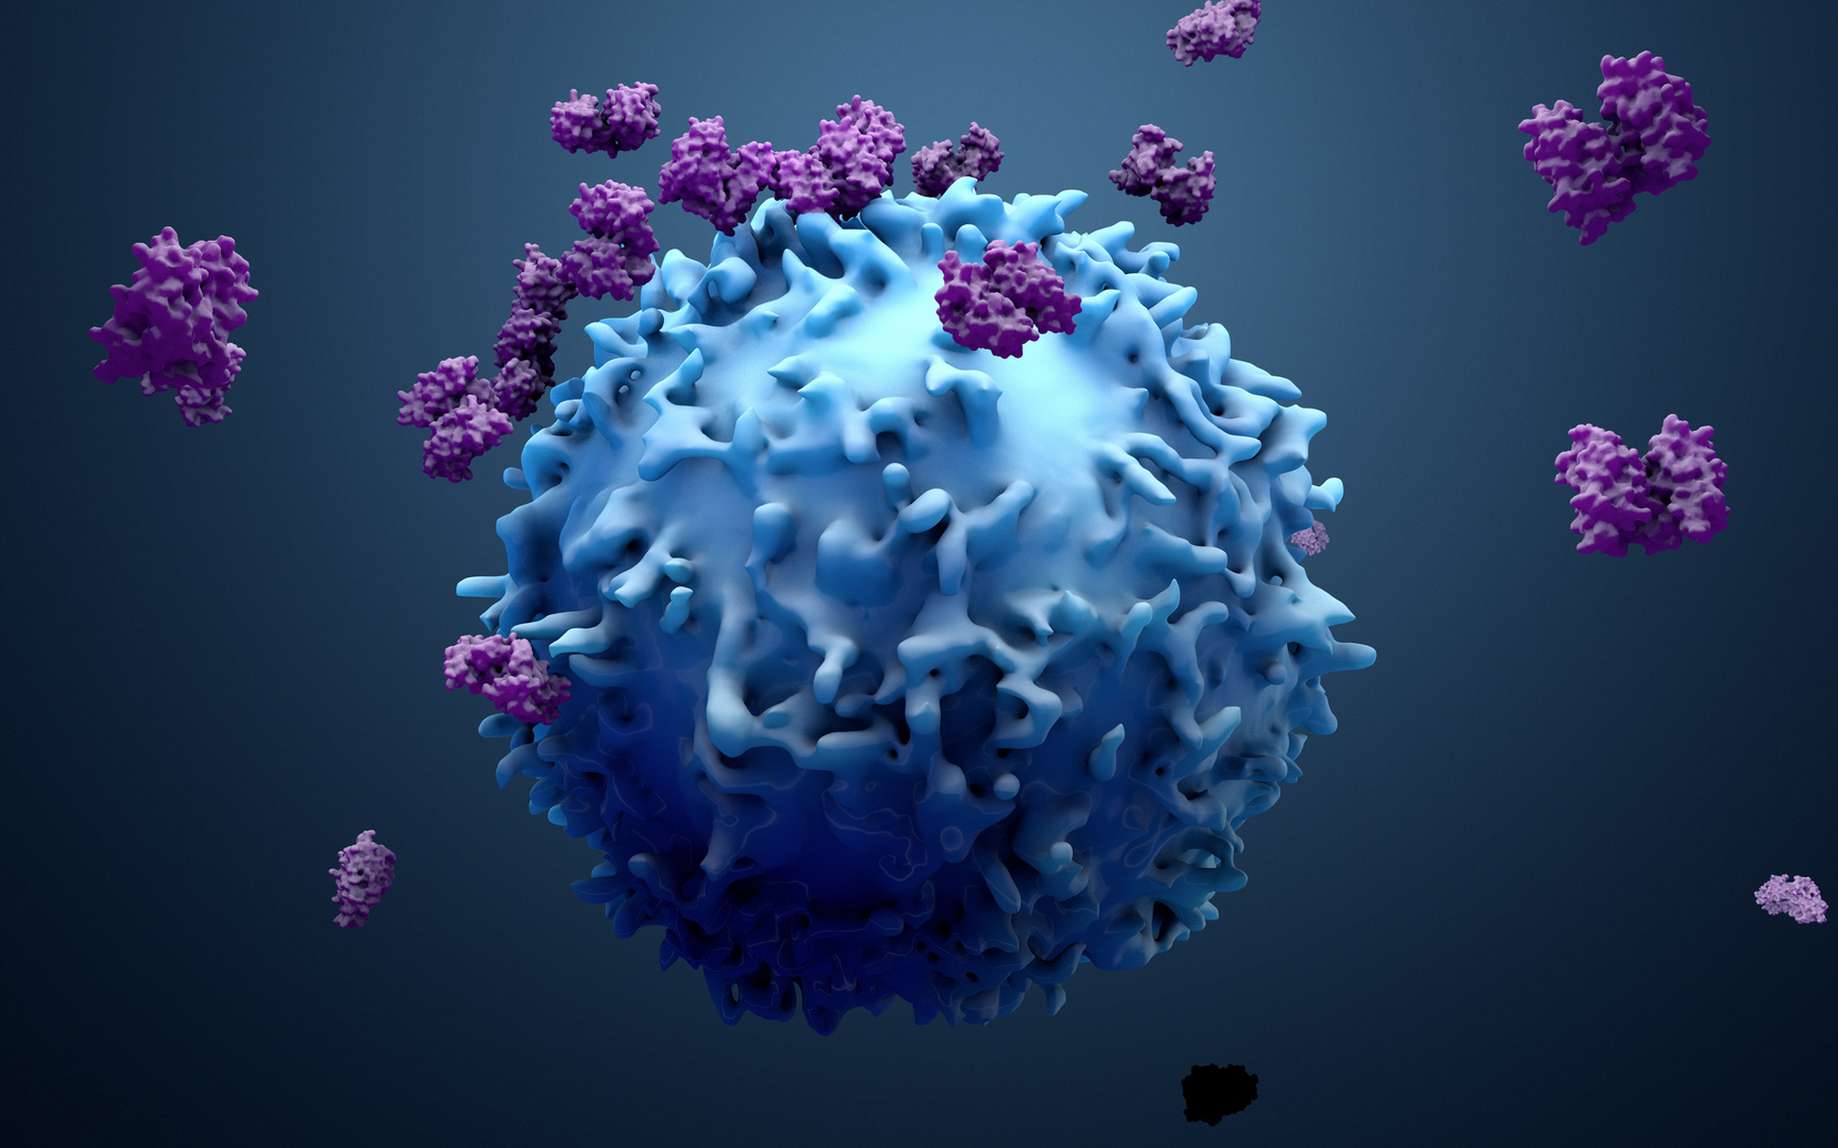 Le lumican empêche les cytokines de s’échapper vers d’autres tissus sains. © Design Cells, Fotolia